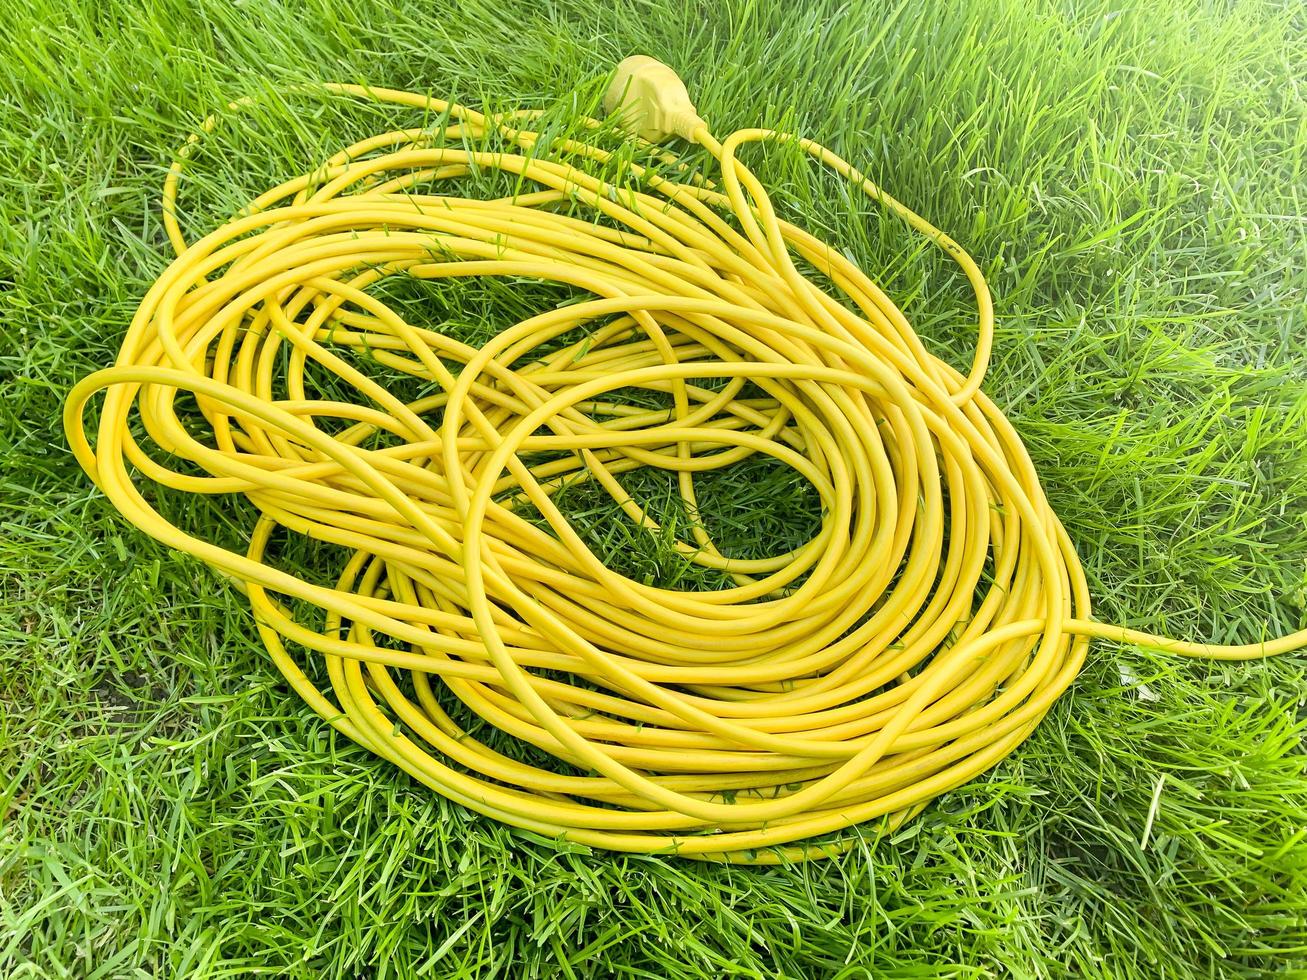 câble électrique jaune sur l'herbe verte. photo